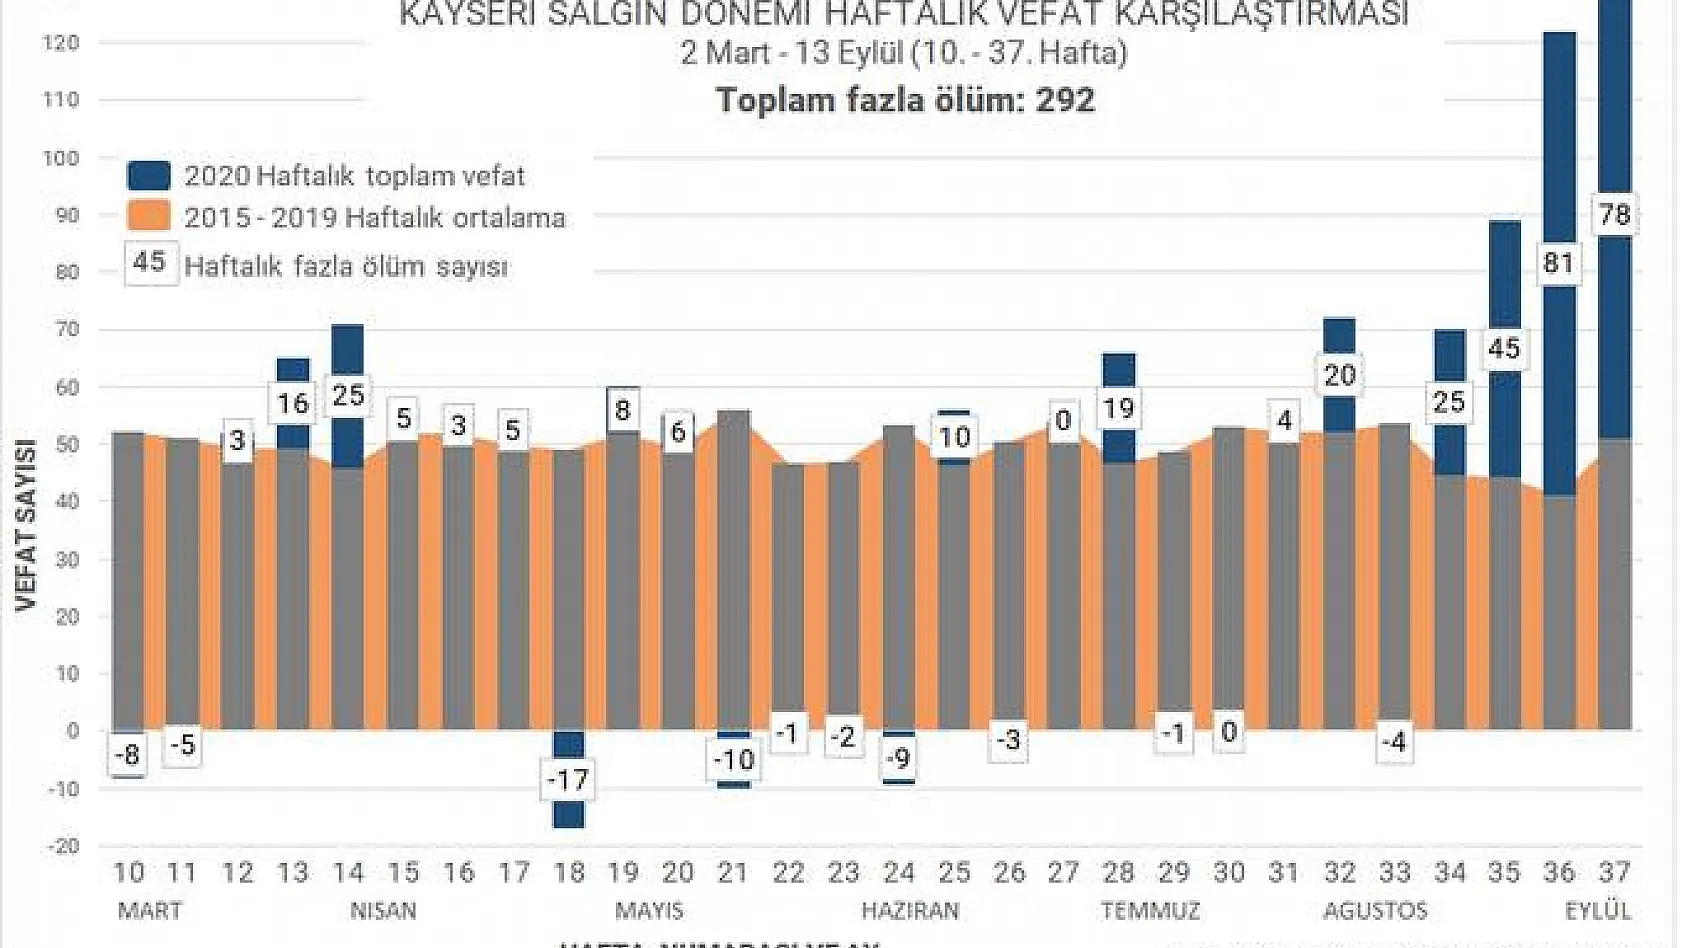 Şok iddia: Kayseri'de önceki 5 yılın ortalamasına göre 214 fazla ölüm yaşandı!